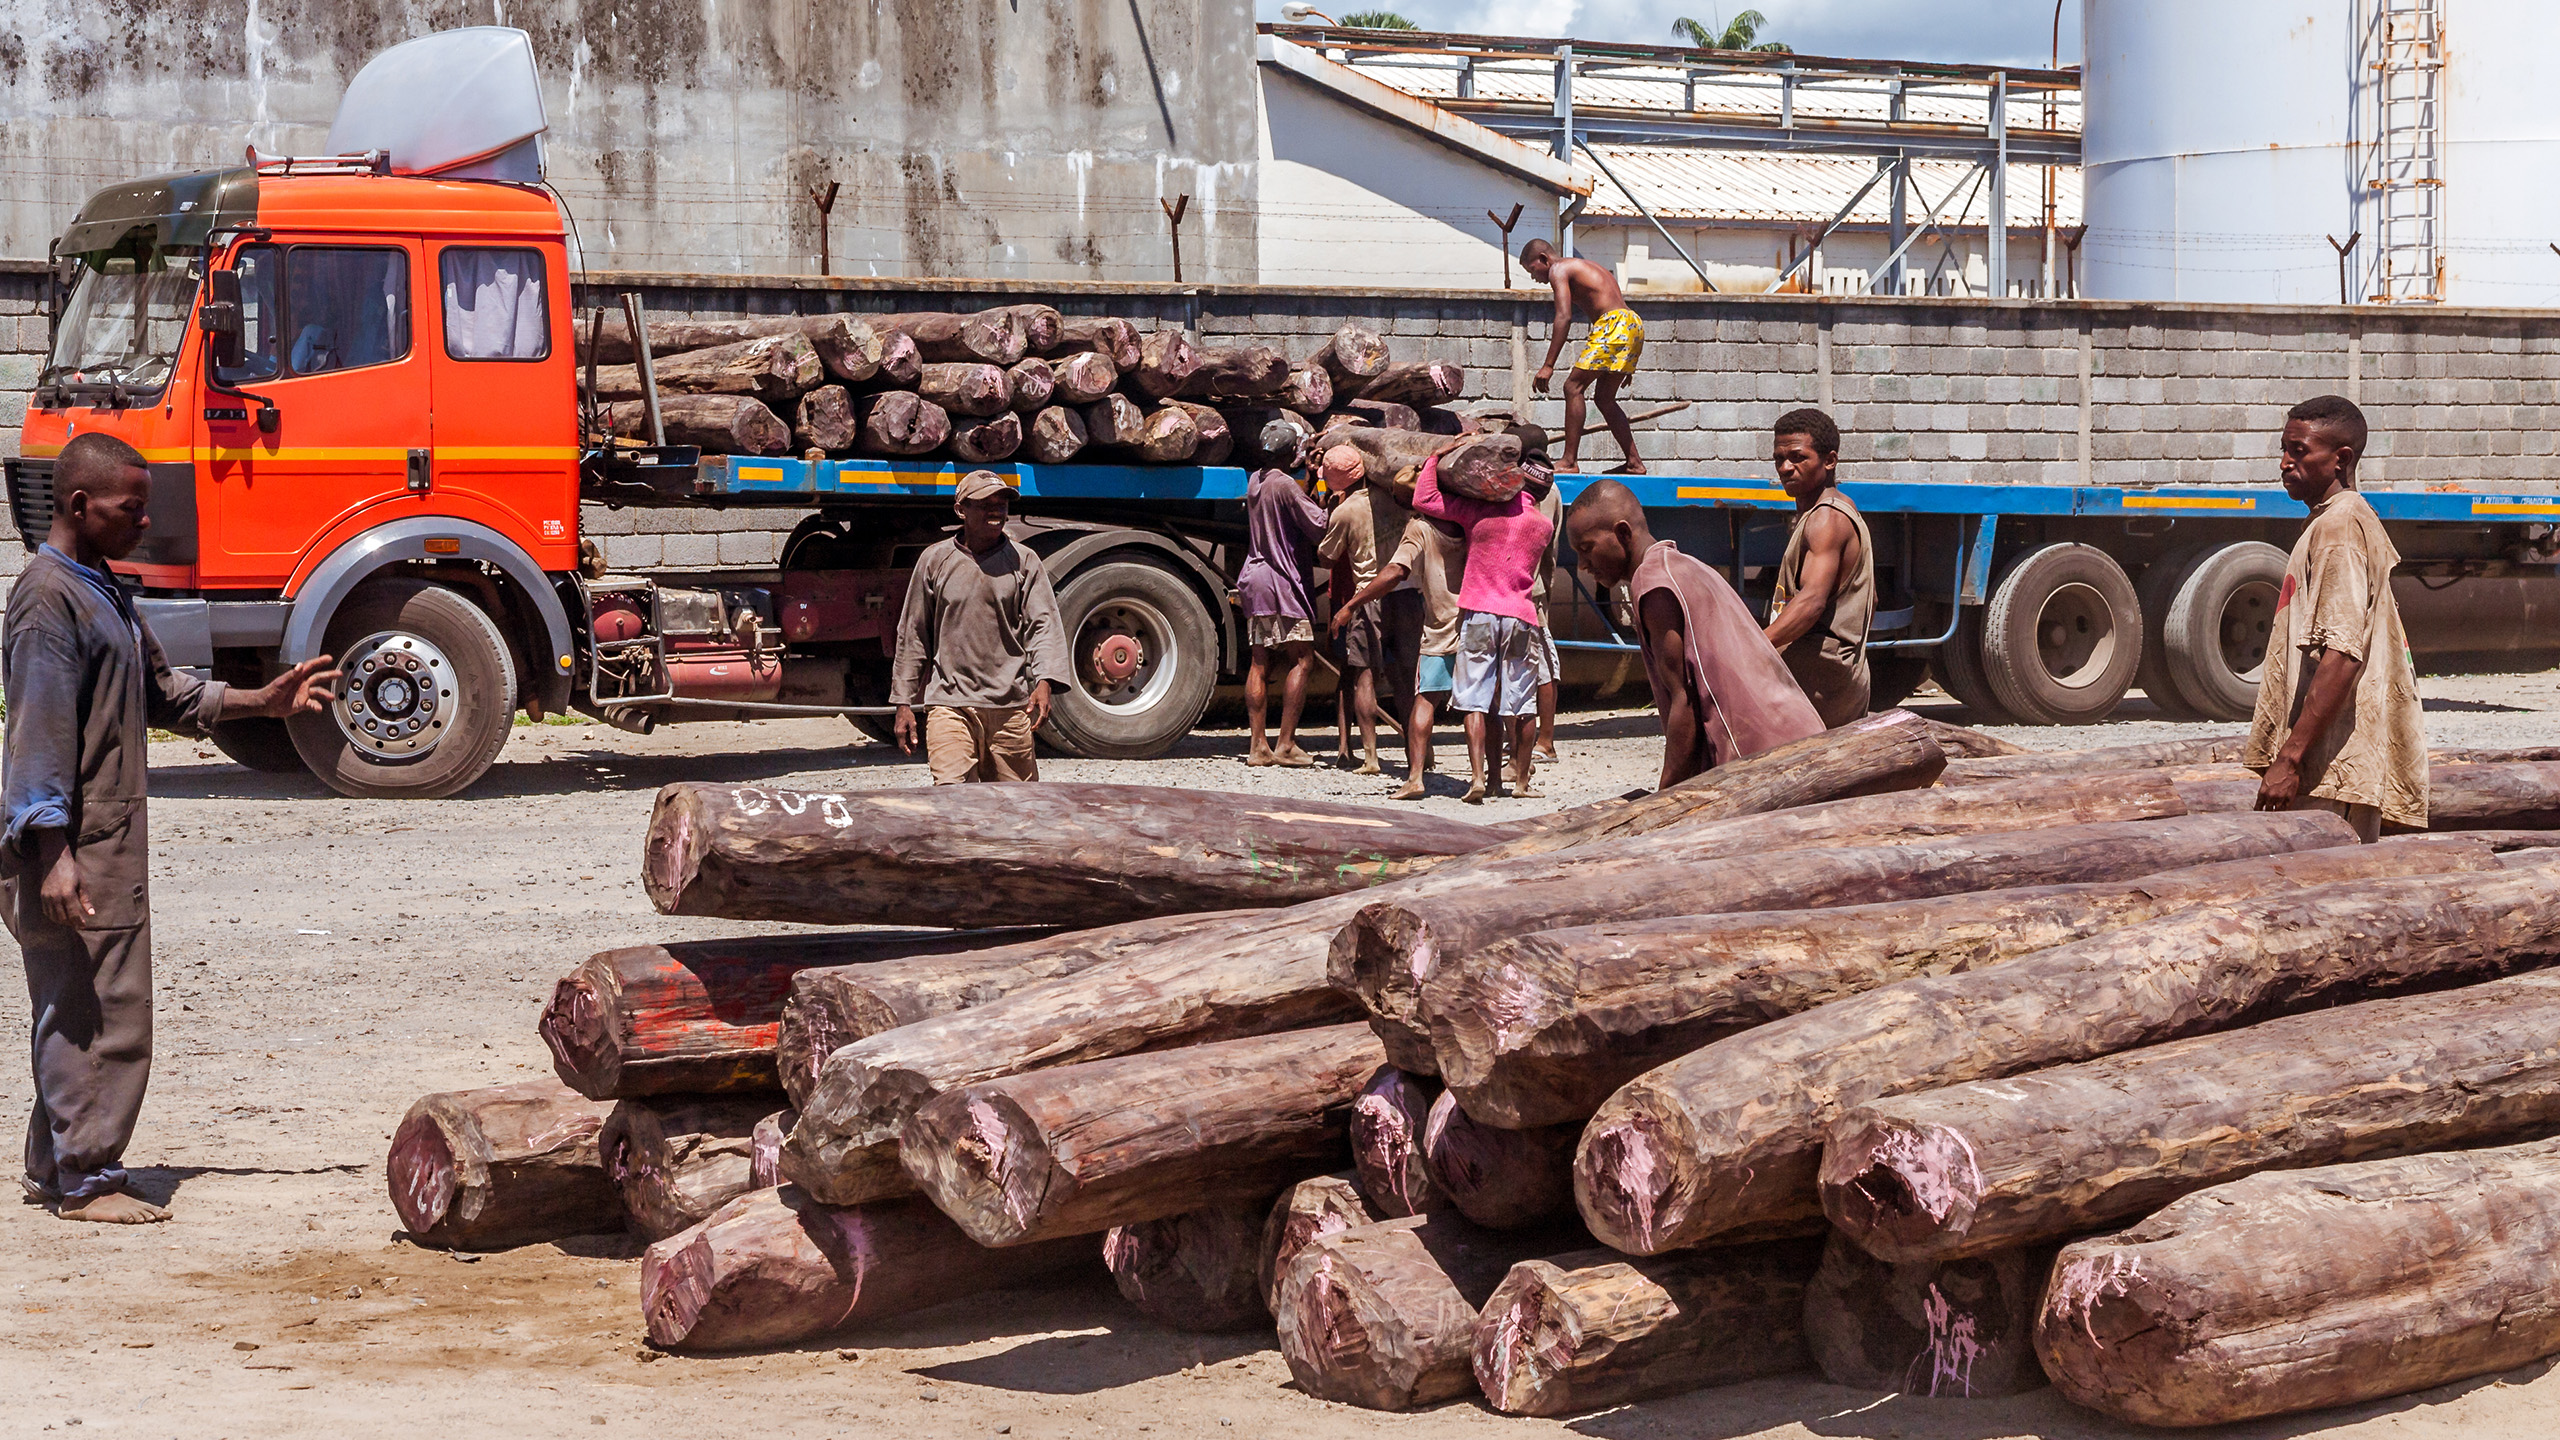 Abholzung von Edelhölzern wie hier bei Toamasina im Osten Madagaskars führt zu erheblichen Schäden. | Pierre-Yves Babelon/Shutterstock